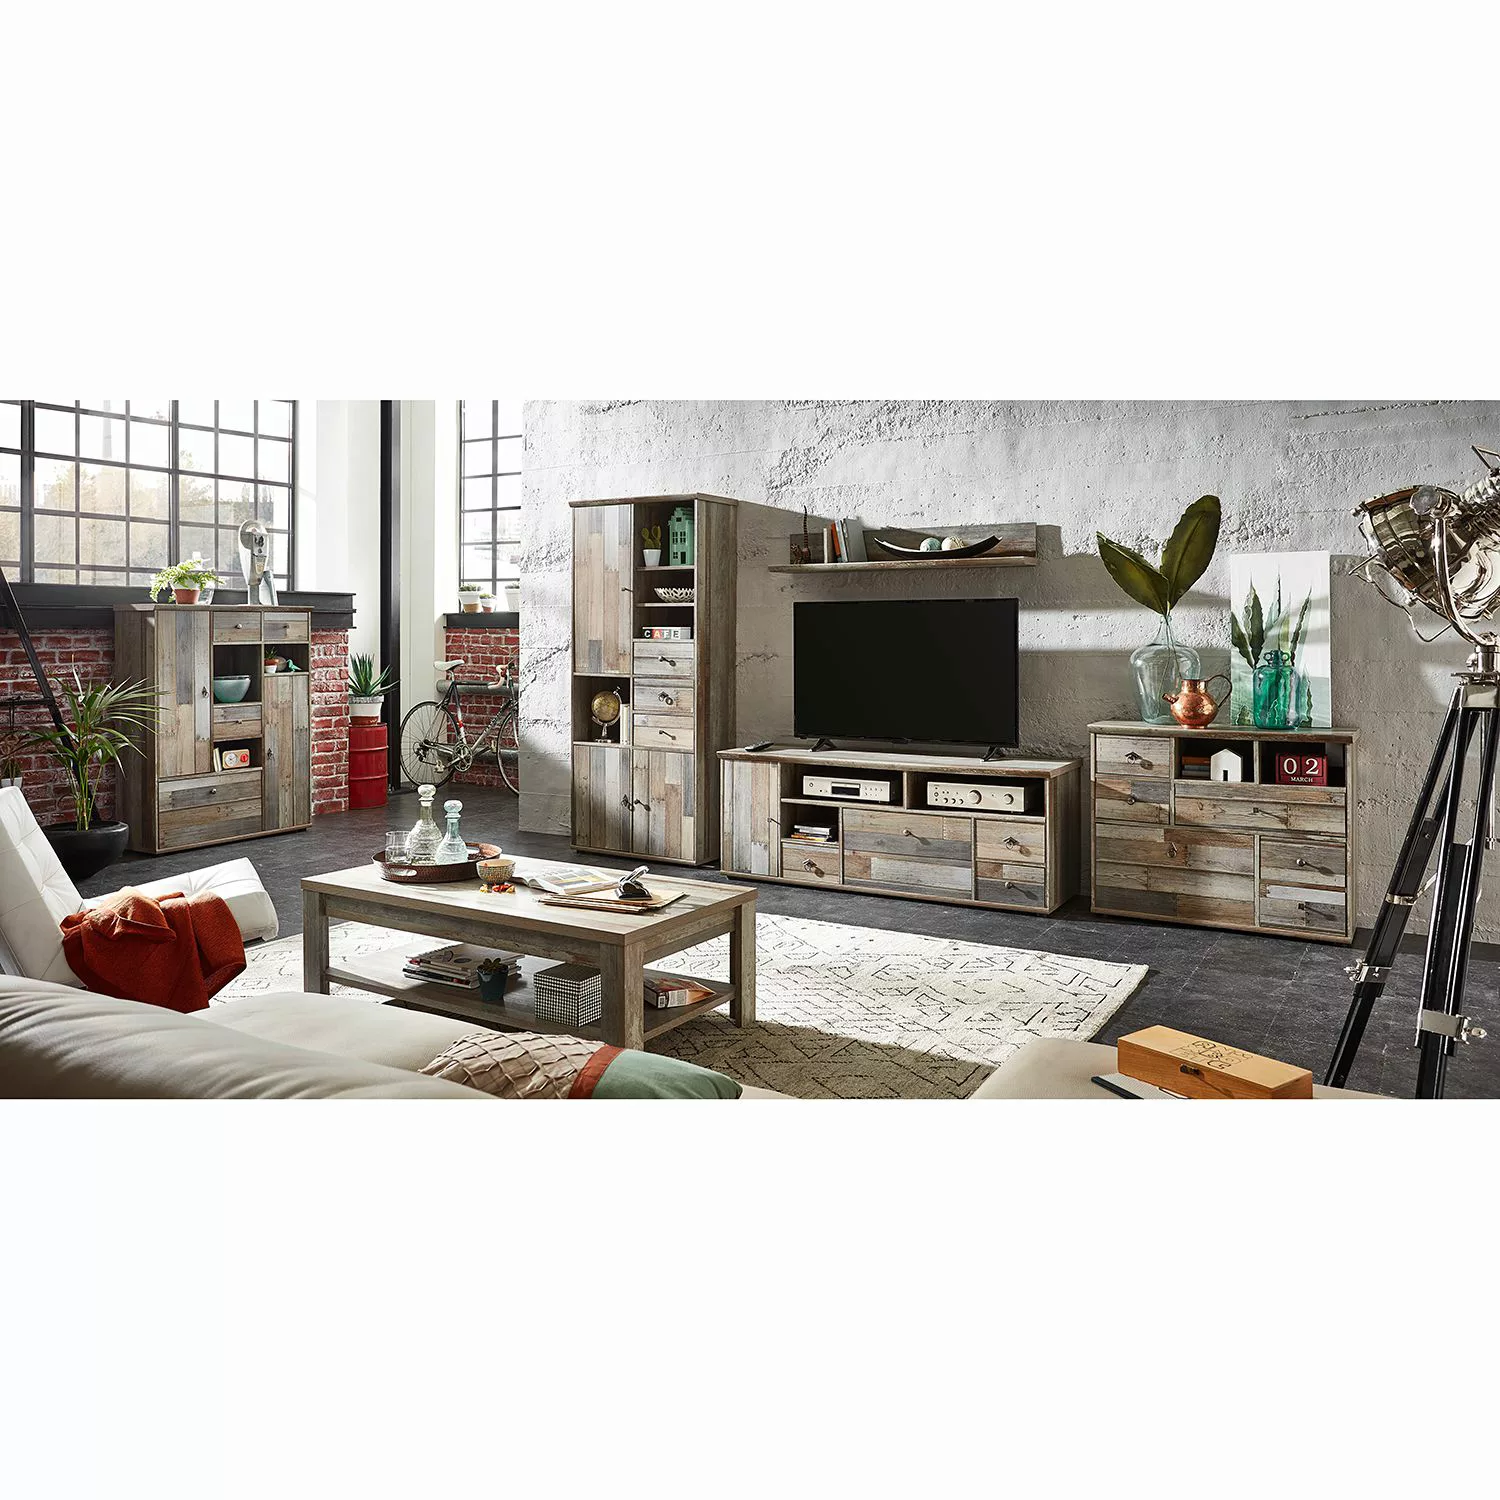 TV Unterteil - holzfarben - 162 cm - 62 cm - 52 cm - TV- & Media Möbel > TV günstig online kaufen